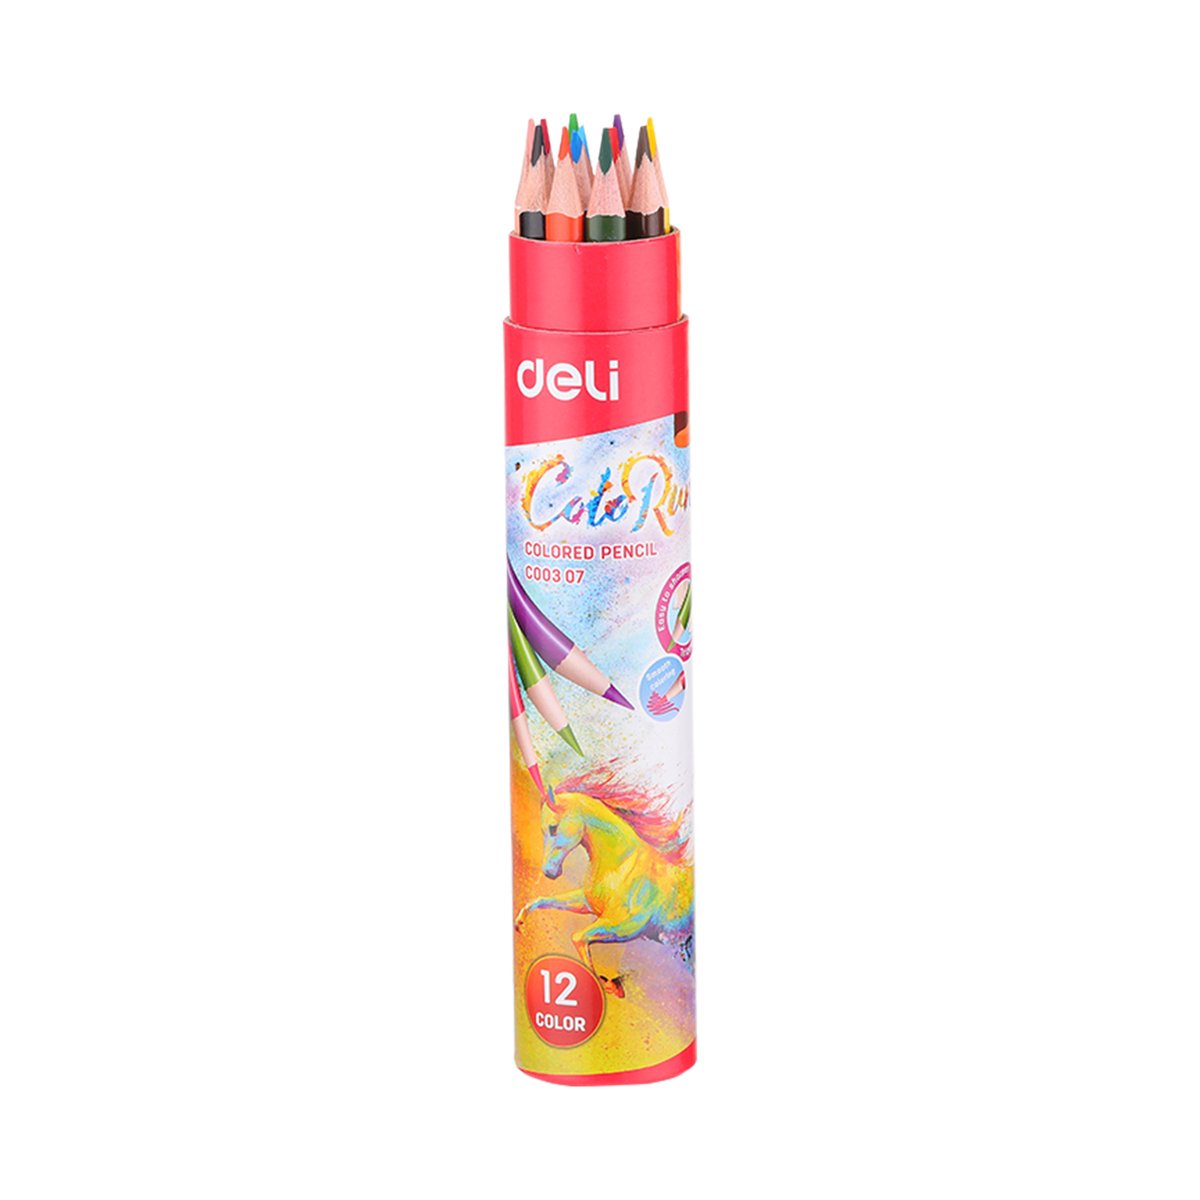 Deli Color Pencil Cyldr C00307 12Pcs